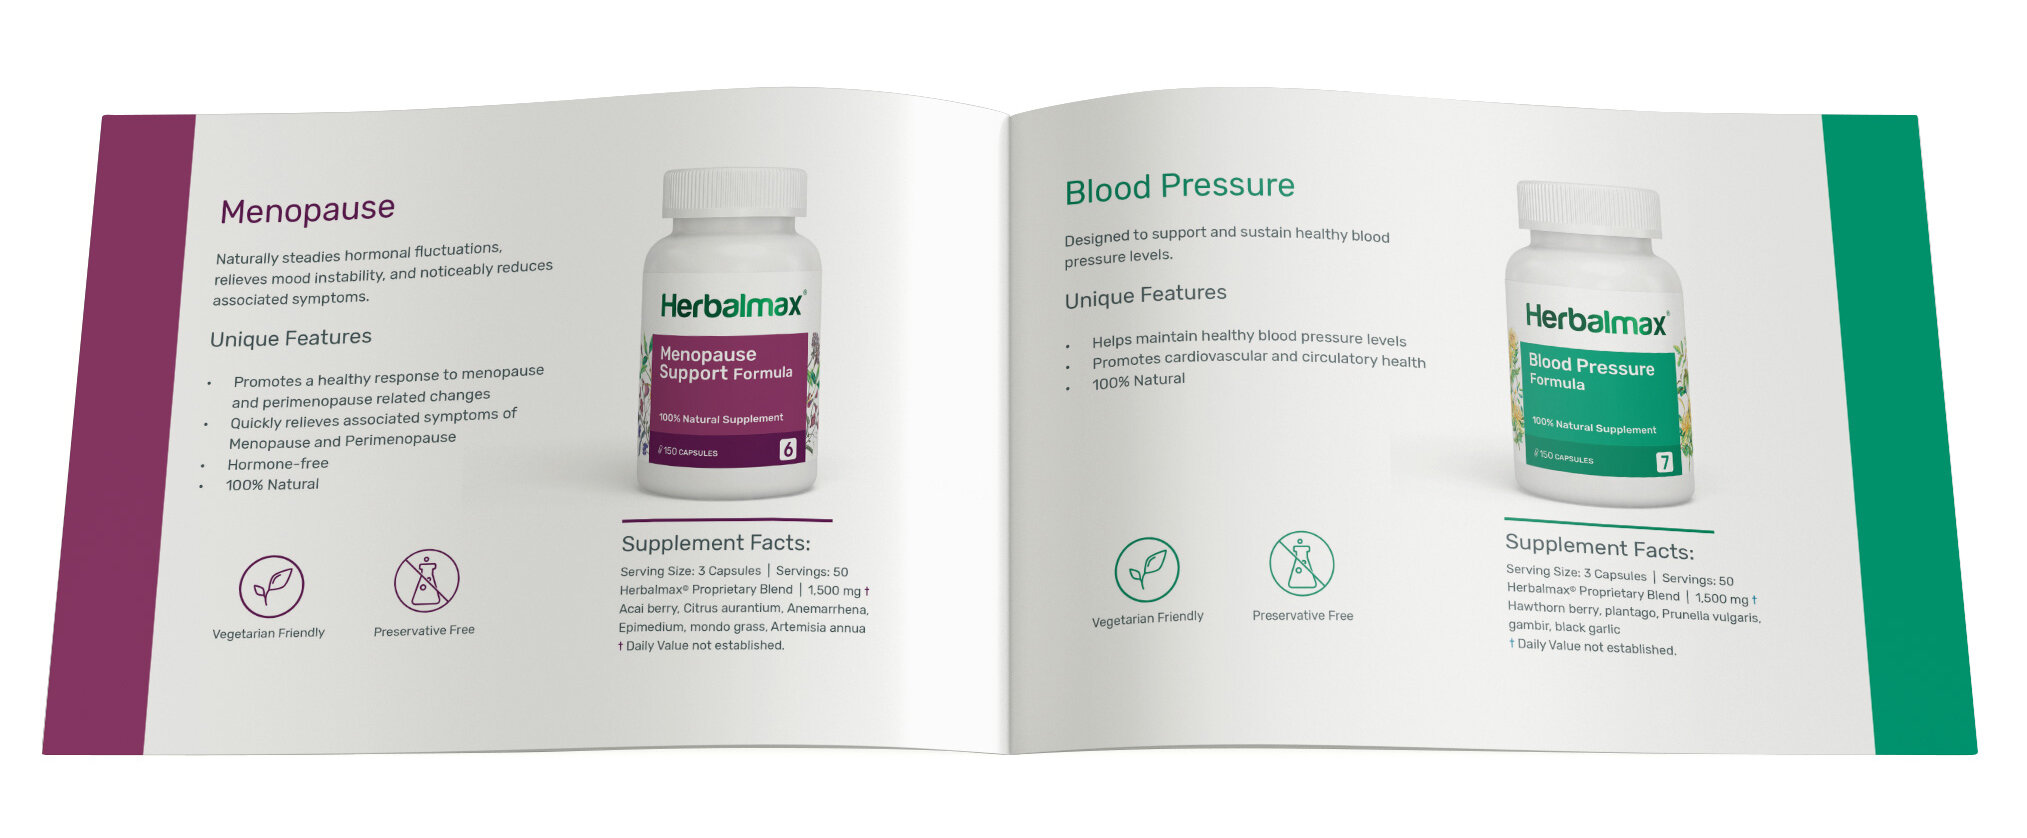 Herbalmax_Product-Brochure_5.jpg